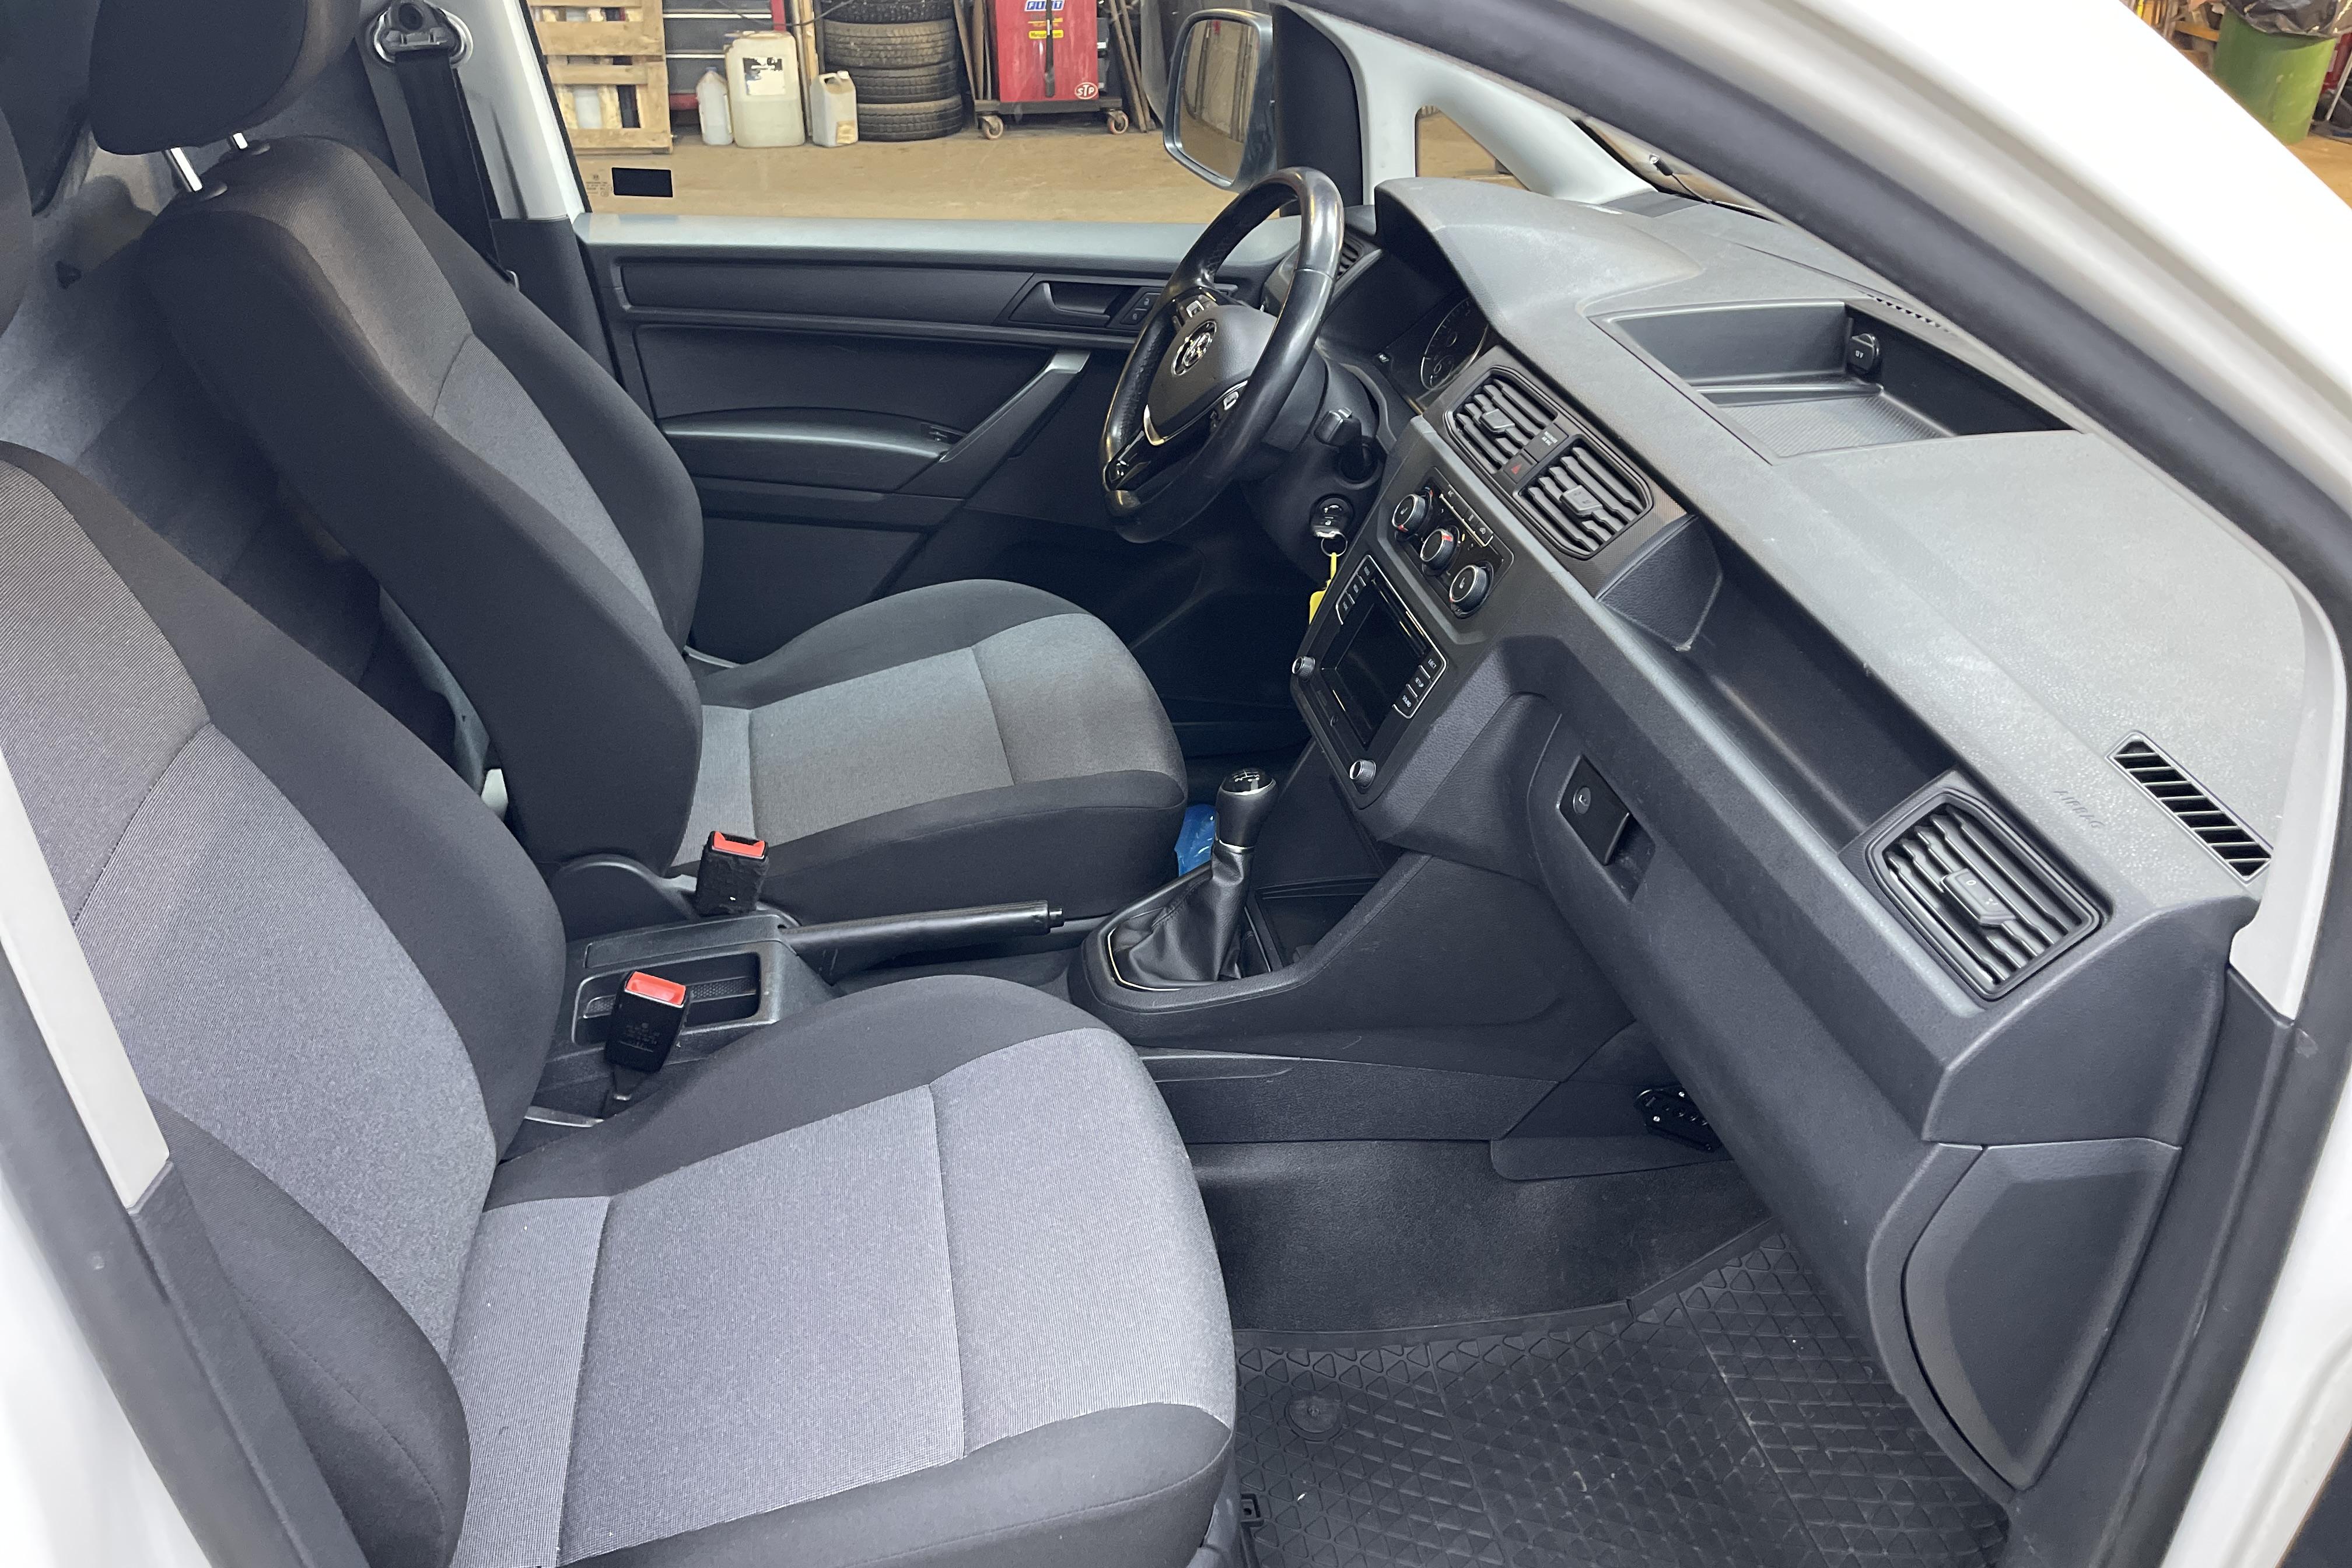 VW Caddy 2.0 TDI Maxi Skåp 4MOTION (122hk) - 22 544 mil - Manuell - vit - 2018